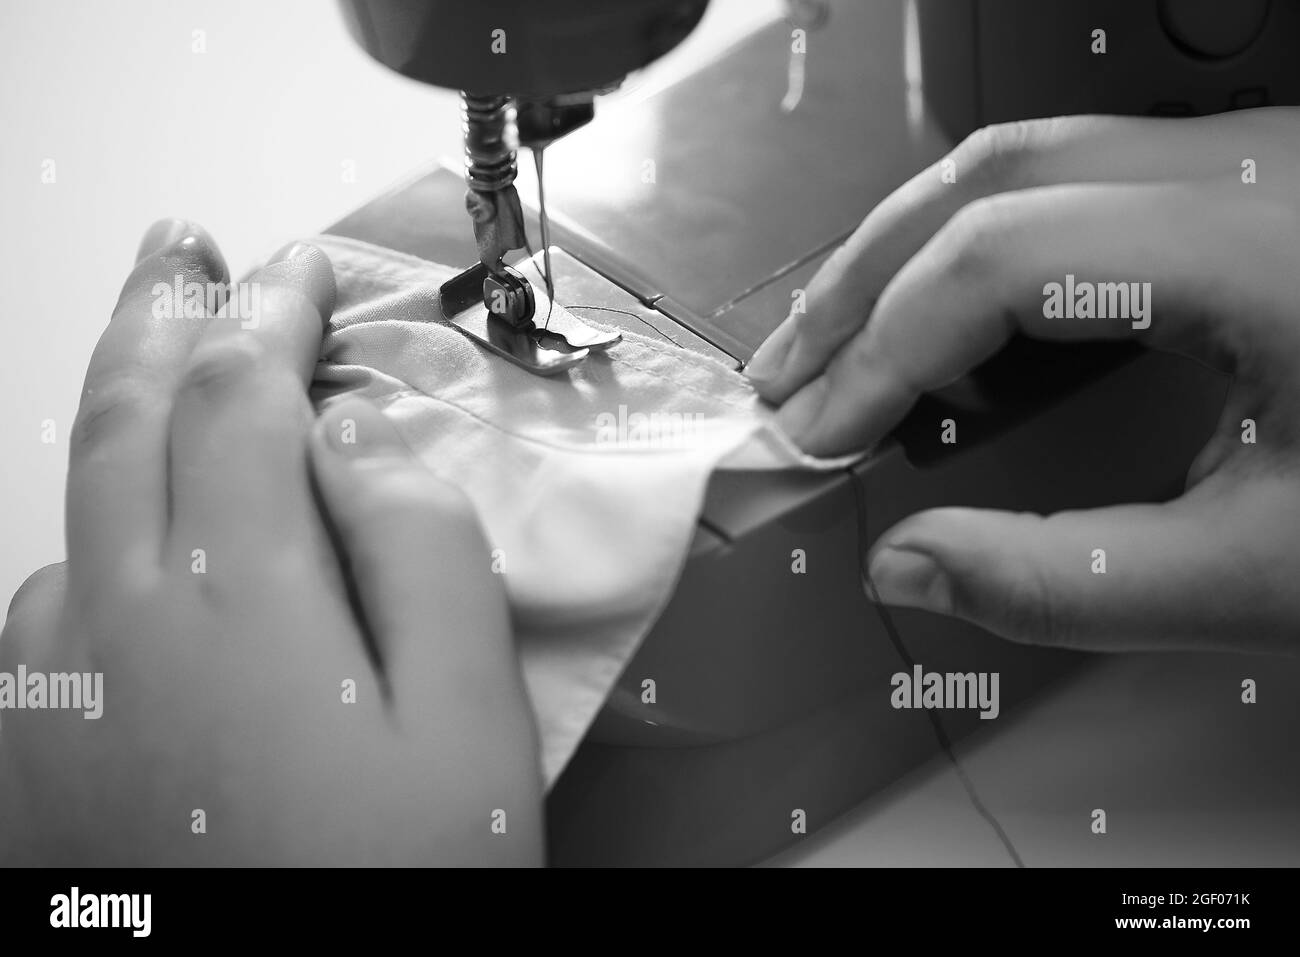 Un gros plan échelle de gris d'une personne qui coud un tissu avec la machine à coudre Banque D'Images